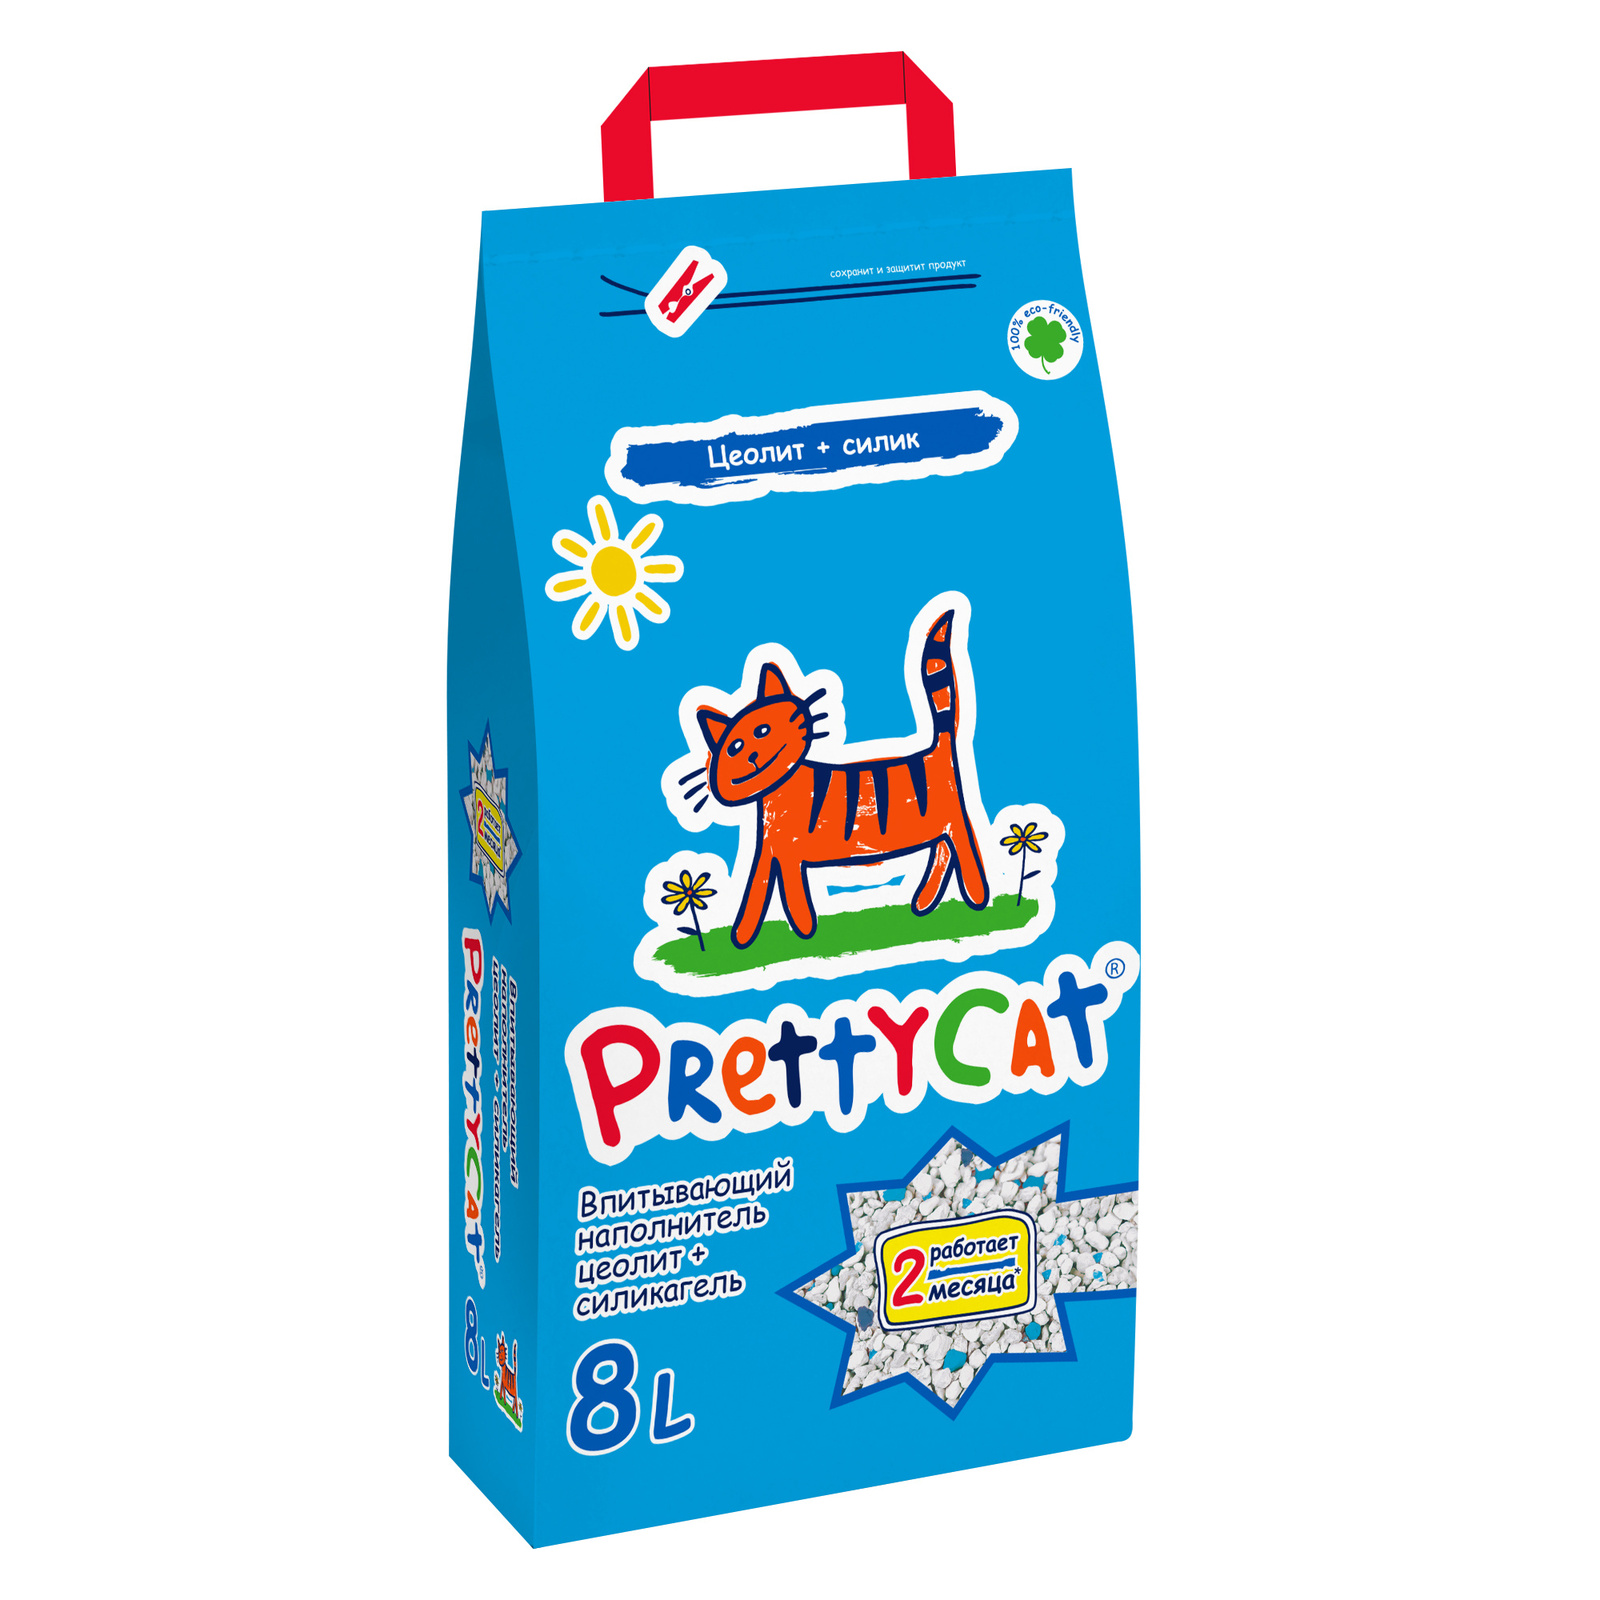 PrettyCat PrettyCat наполнитель впитывающий для кошачьих туалетов (20 кг) prettycat prettycat наполнитель впитывающий для кошачьих туалетов 20 кг